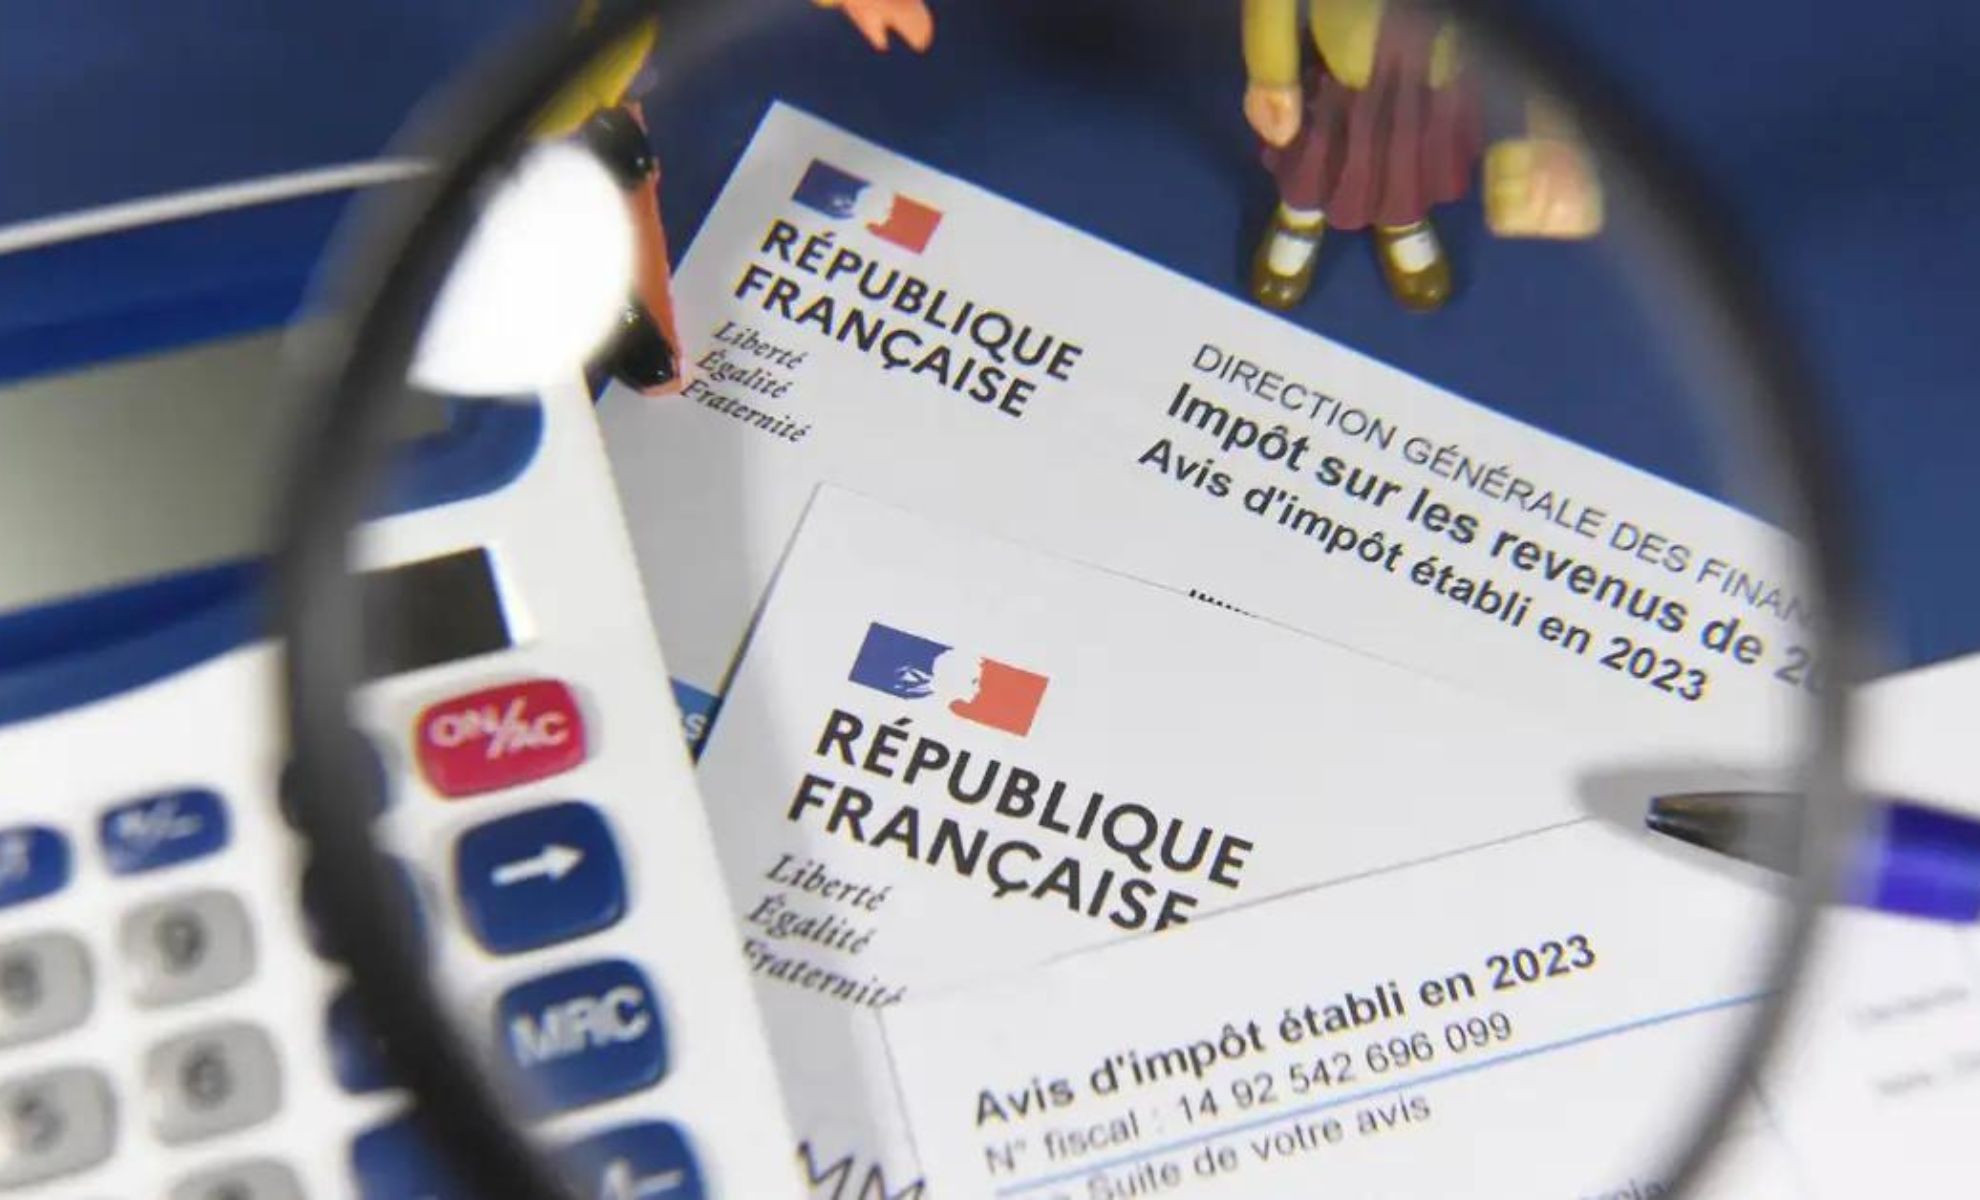 17 juli is de dag van de belastingliberalisering in Frankrijk. Waaruit bestaat deze?